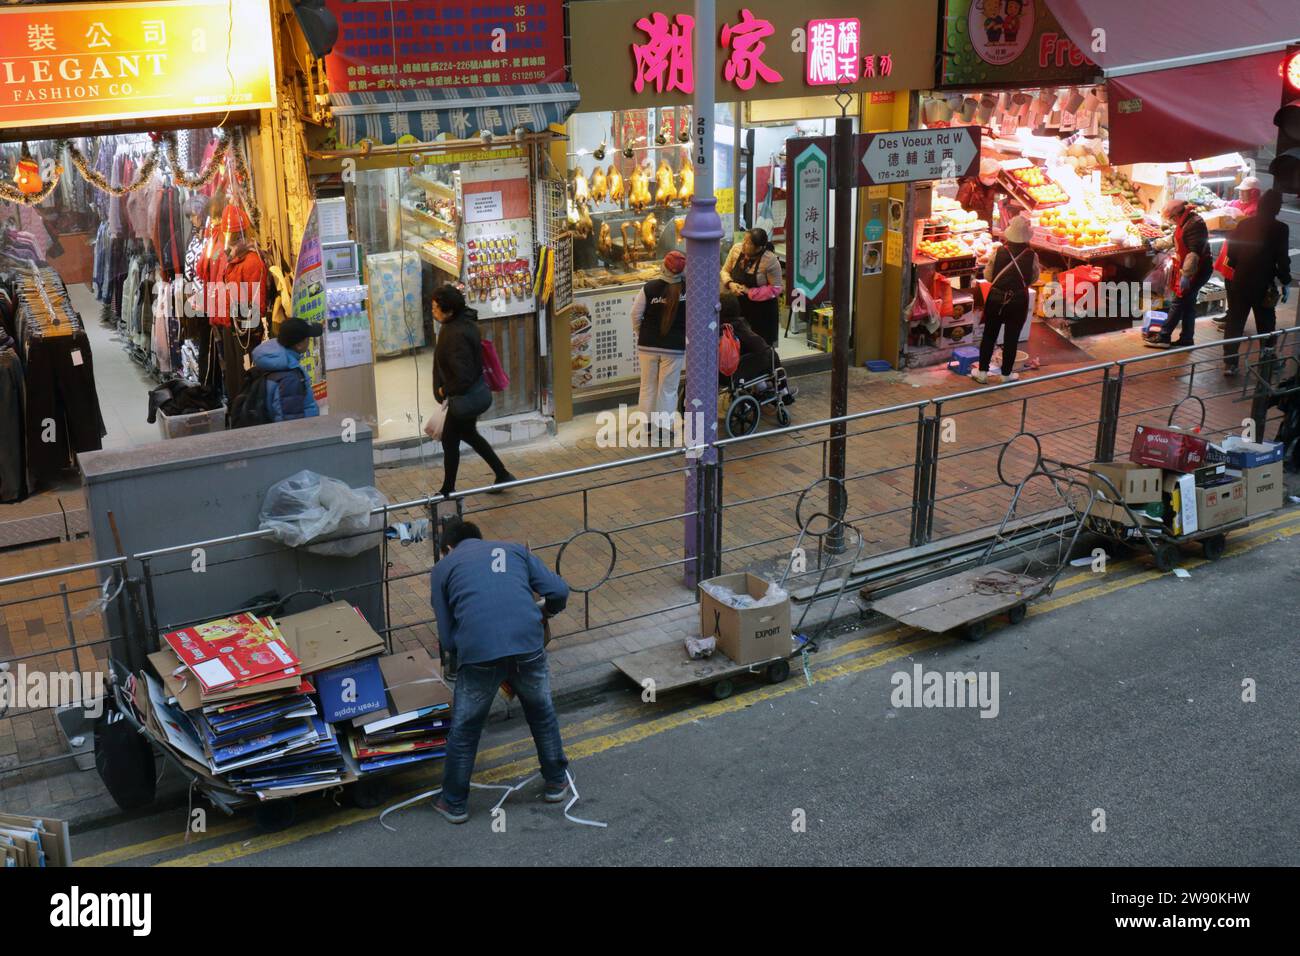 Uomo che raccoglie scatole di cartone fuori dal negozio in 'Seafood Street' - Des Voeux Road, Western, Hong Kong, Cina Foto Stock